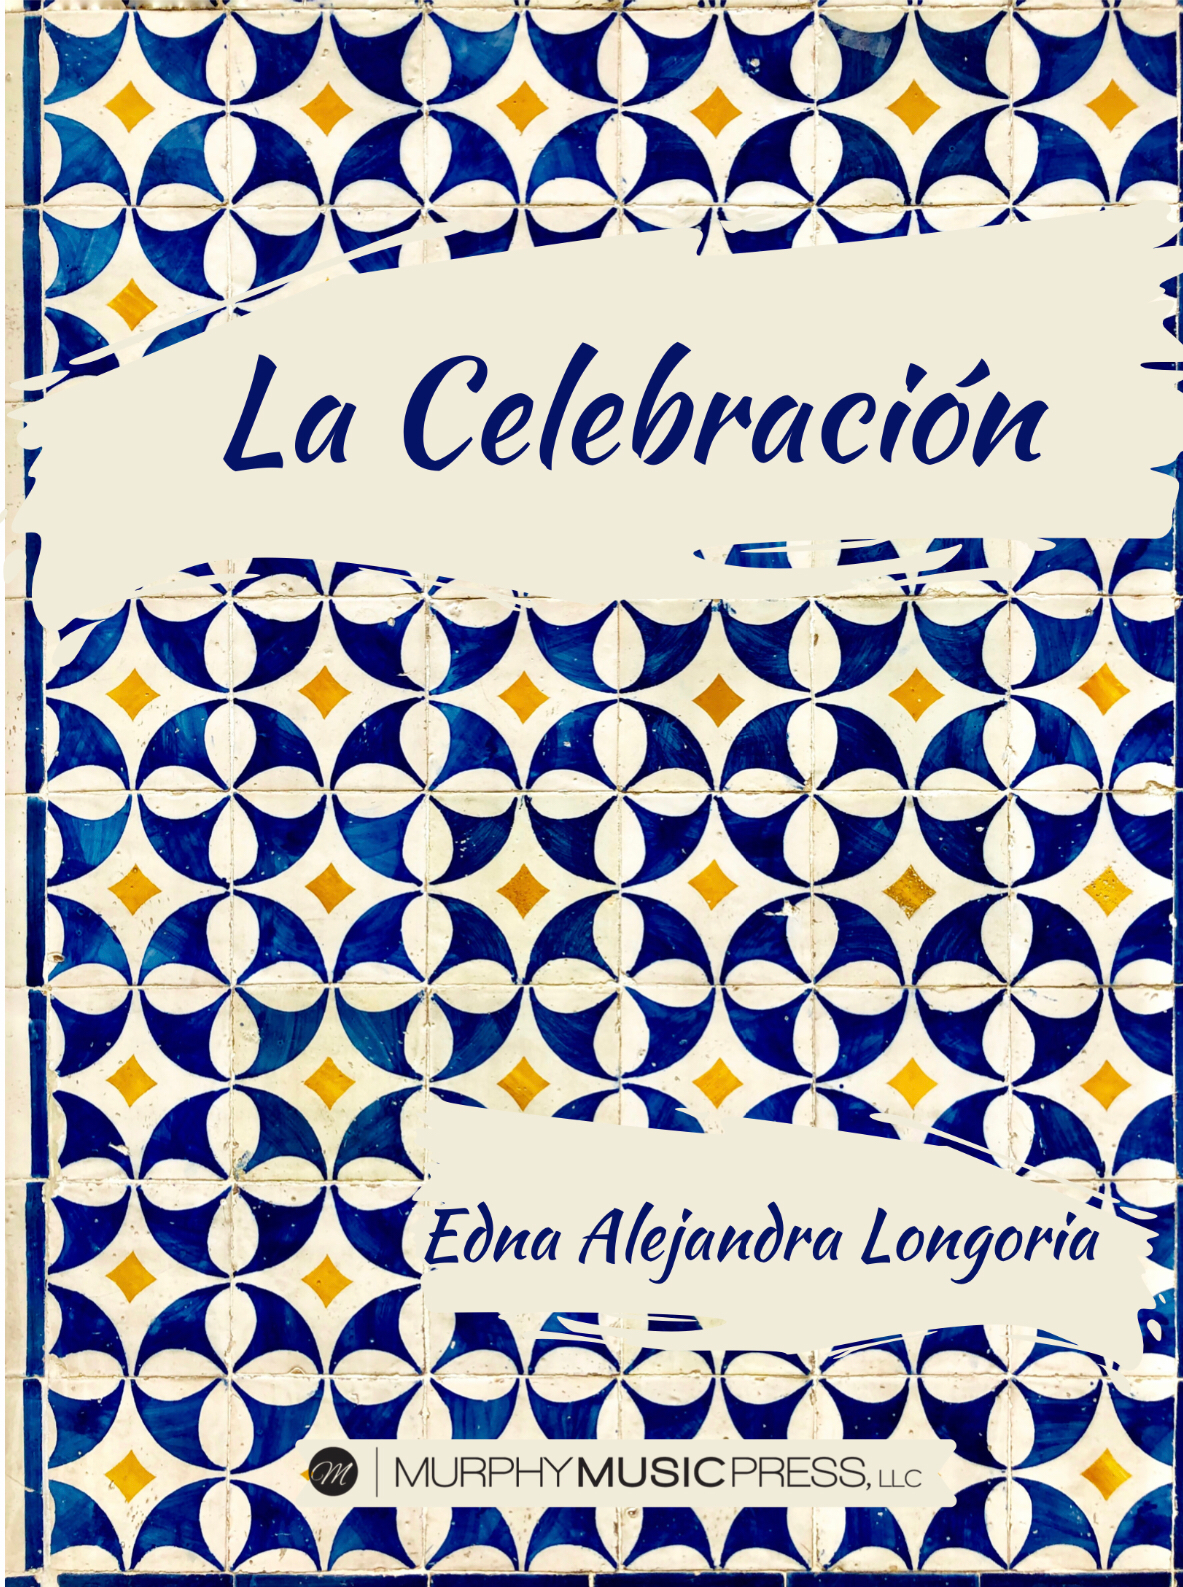 La Celebración by Edna Alejandra Longoria